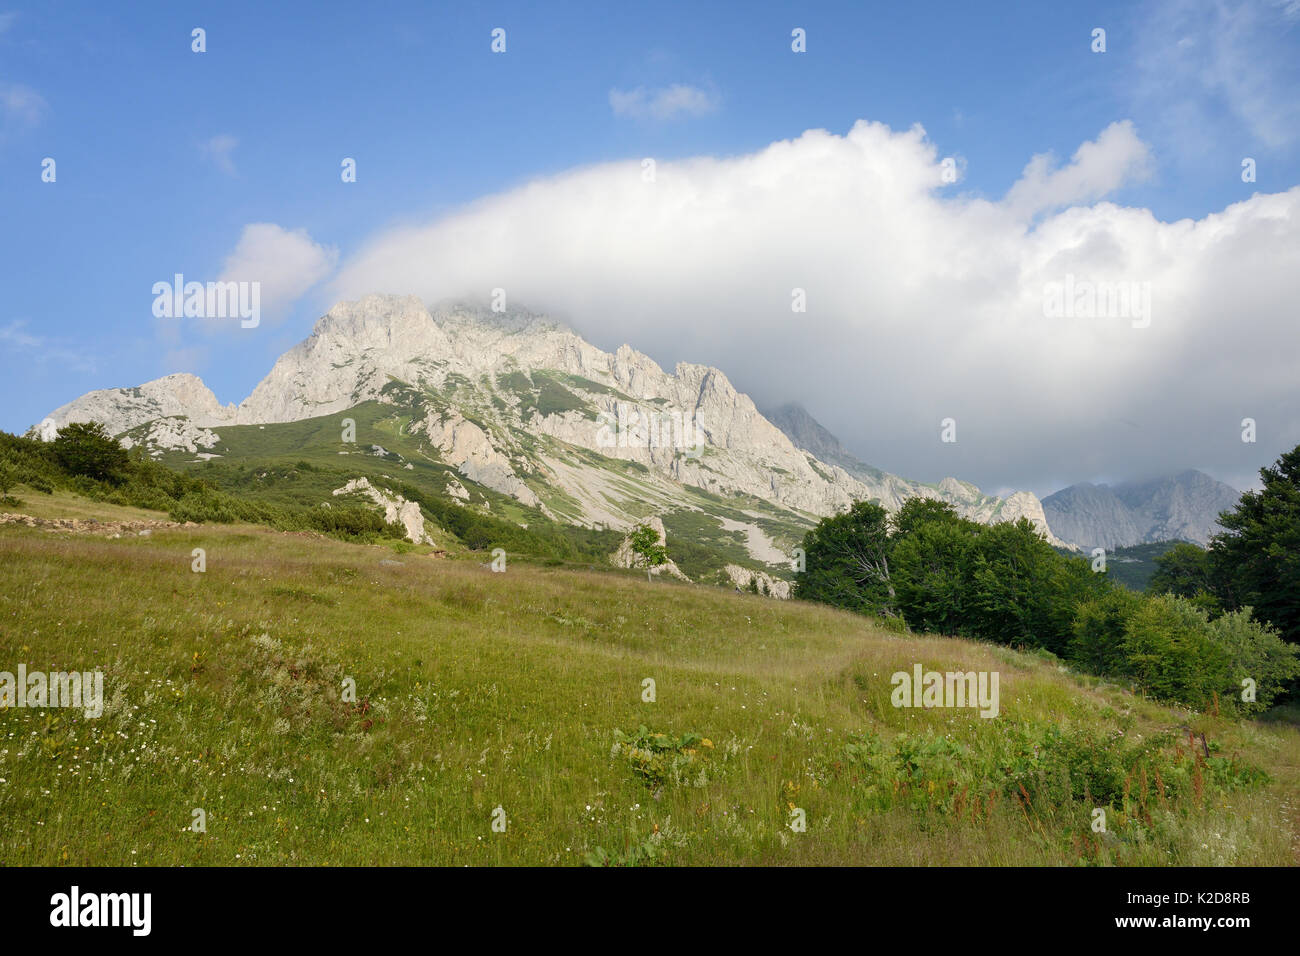 Adiabatische banner Wolken bilden, über den 2386 m Gipfel von Mount Maglic, Bosniens Berg, als warme Luft steigt nach oben, kühlt und wird vom Wind verweht, Nationalpark Sutjeska, Bosnien und Herzegowina, Juli 2014. Stockfoto